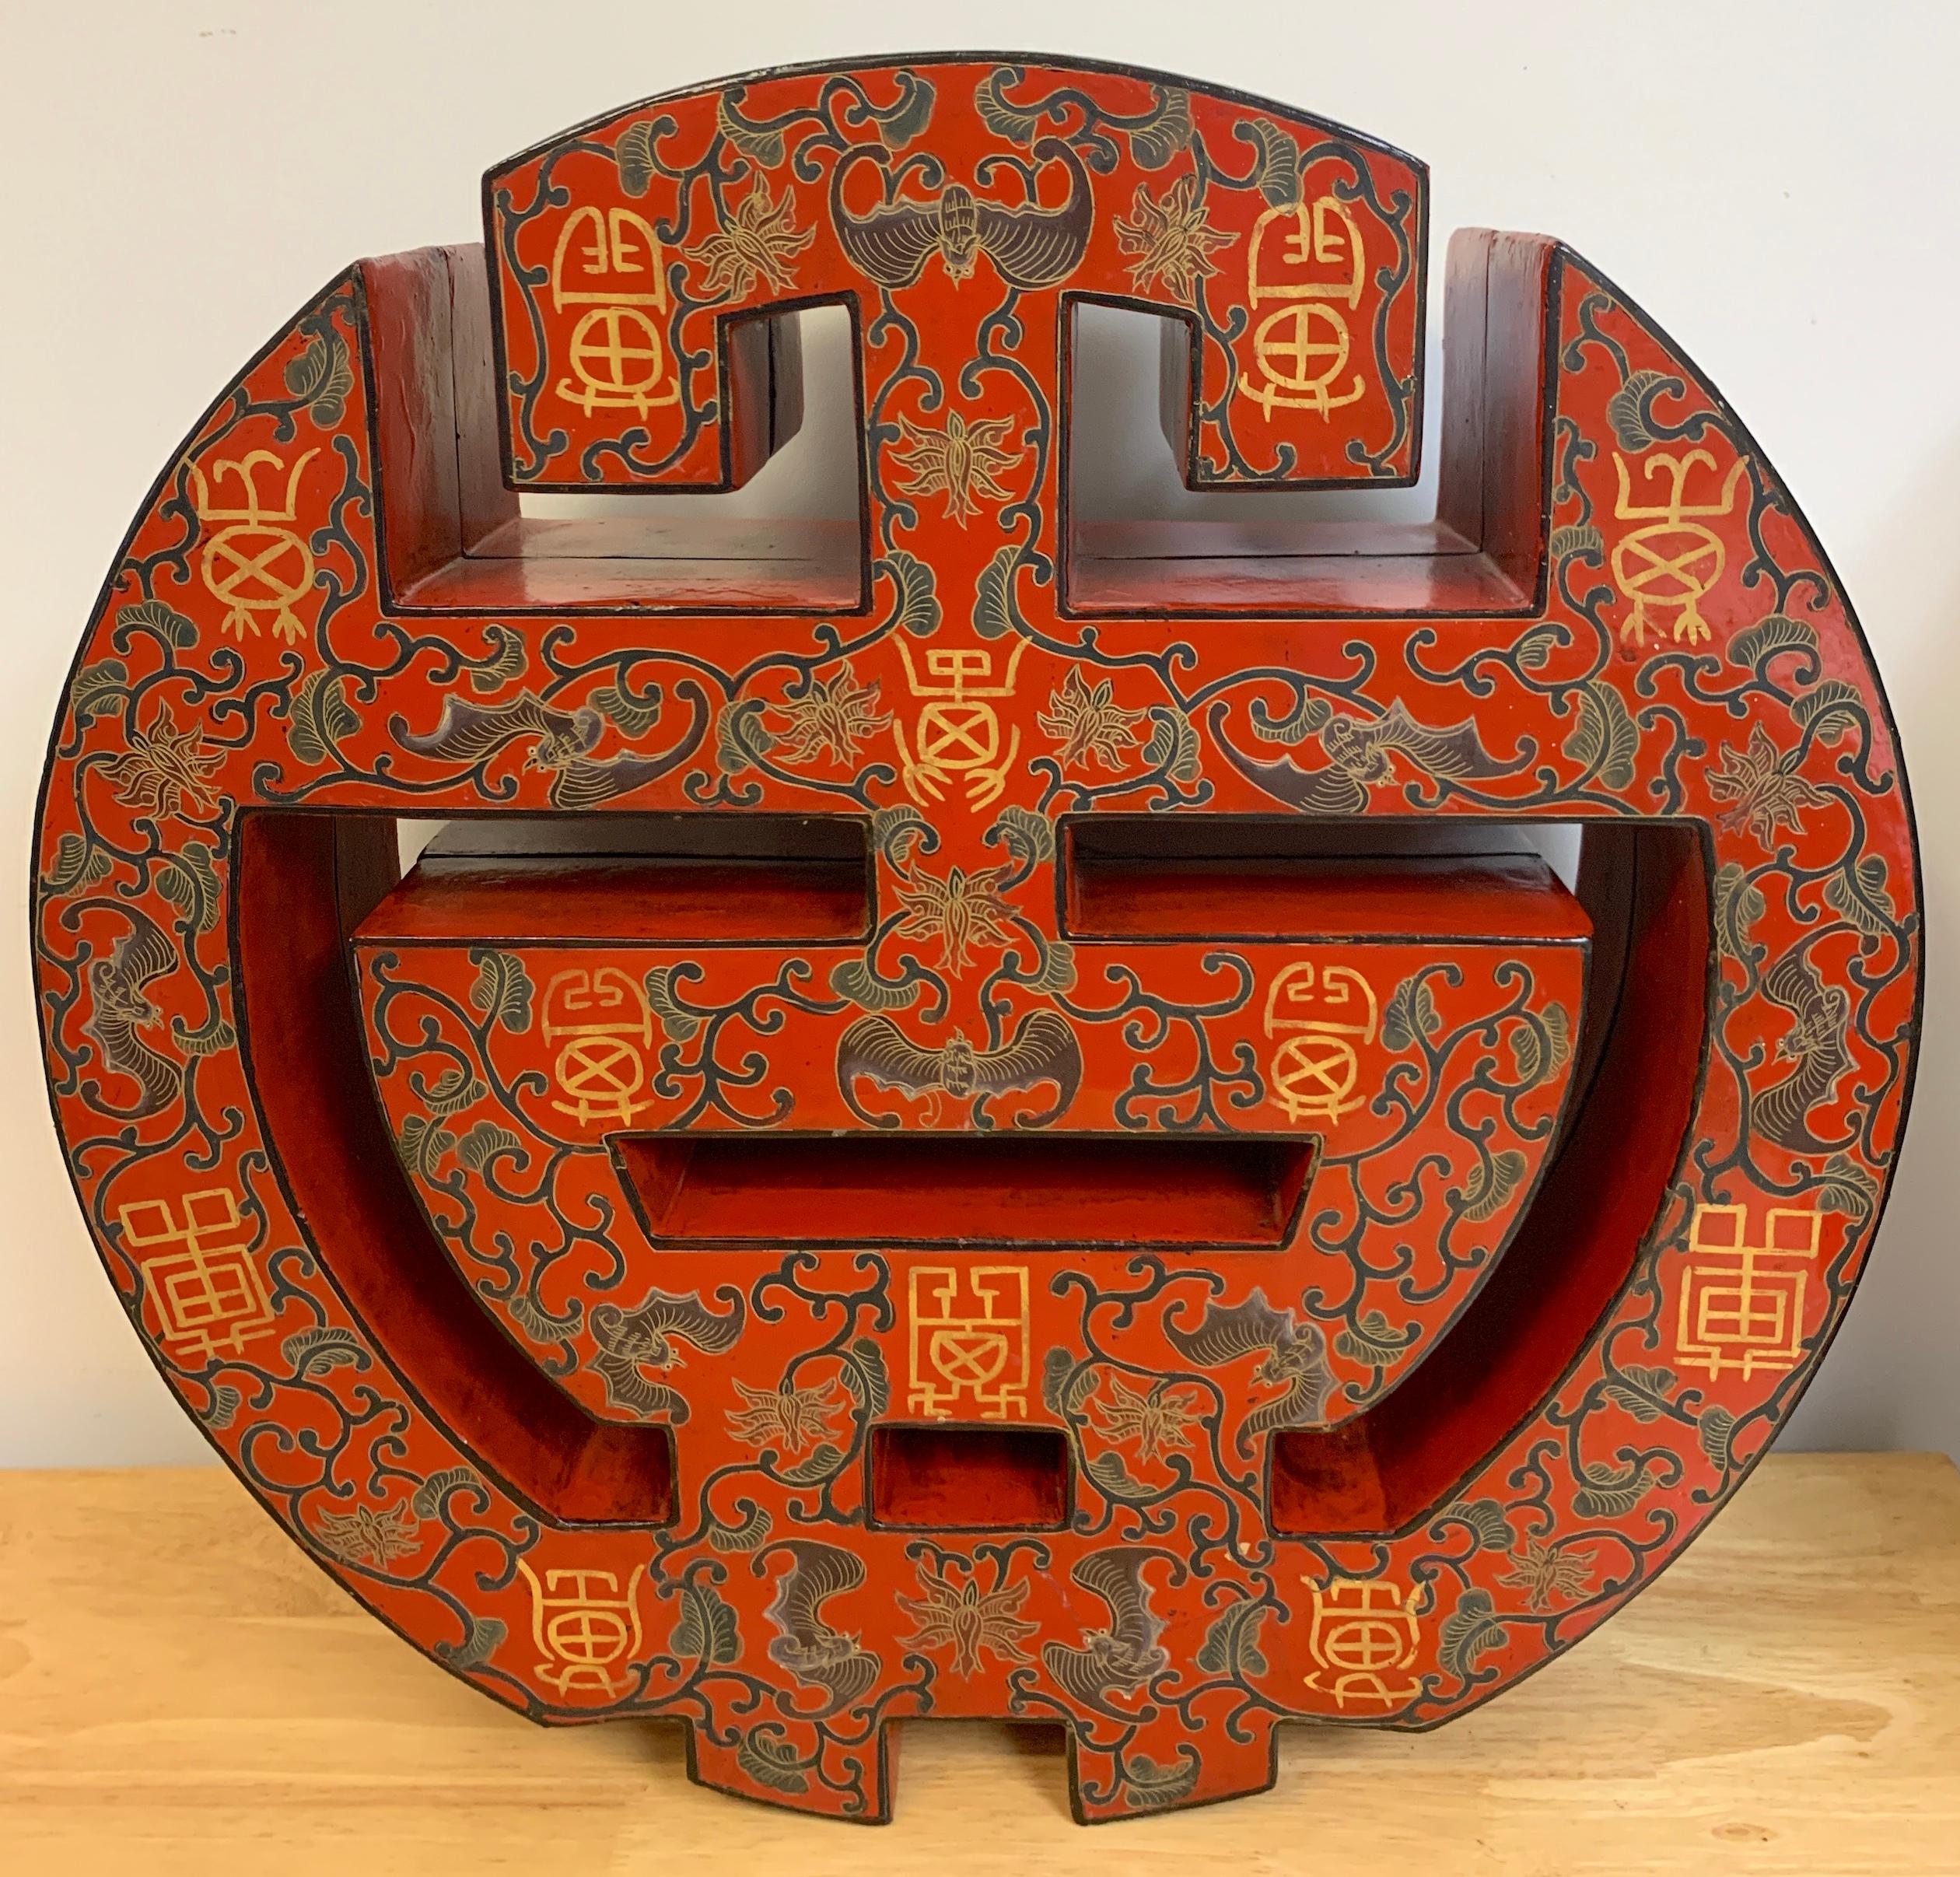 Grande boîte à personnages en laque rouge d'exportation chinoise, boîte de table sculpturale en laque chinoise en deux parties, bien exécutée. 
Décoré de vignes, de symboles et de chauves-souris. Non marqué. 

